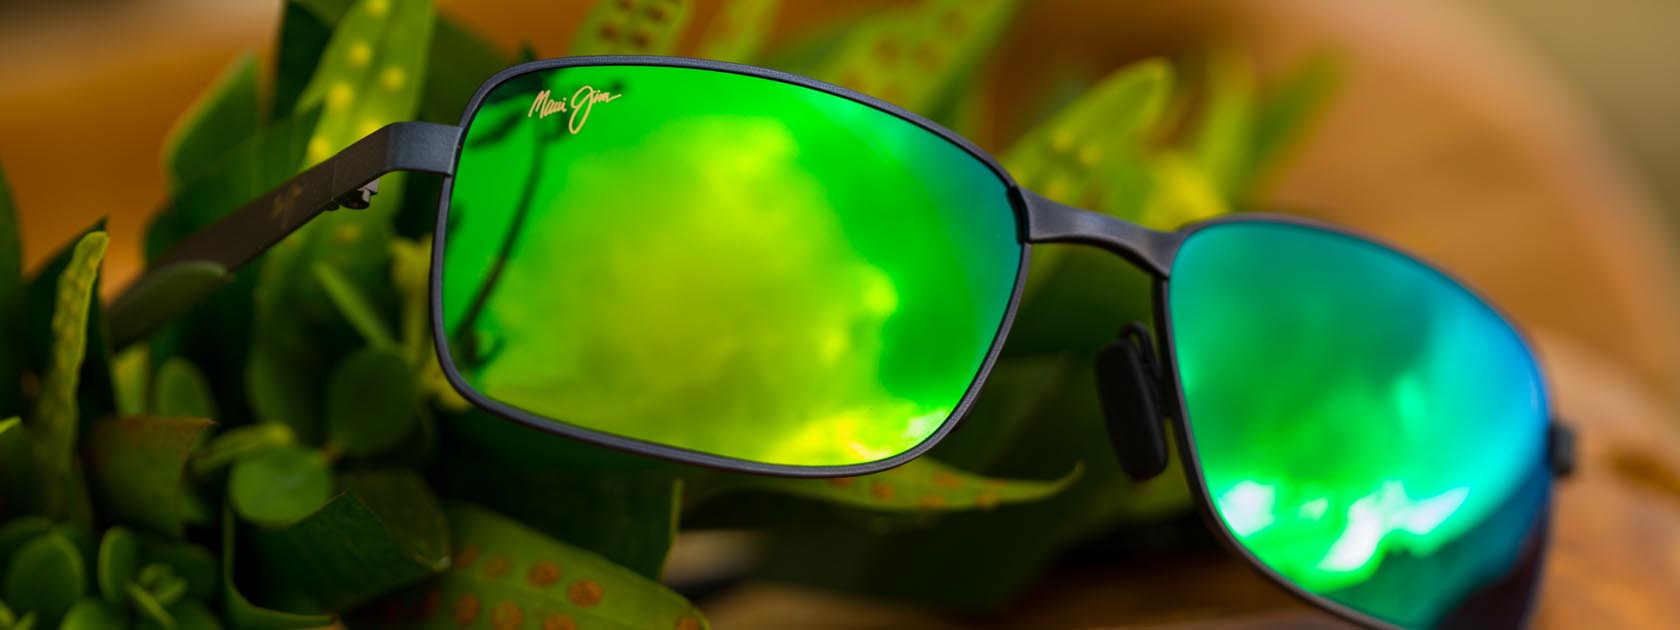 gafas de sol con montura metálica y lentes verdes reflectantes expuestas sobre hojas tropicales verdes